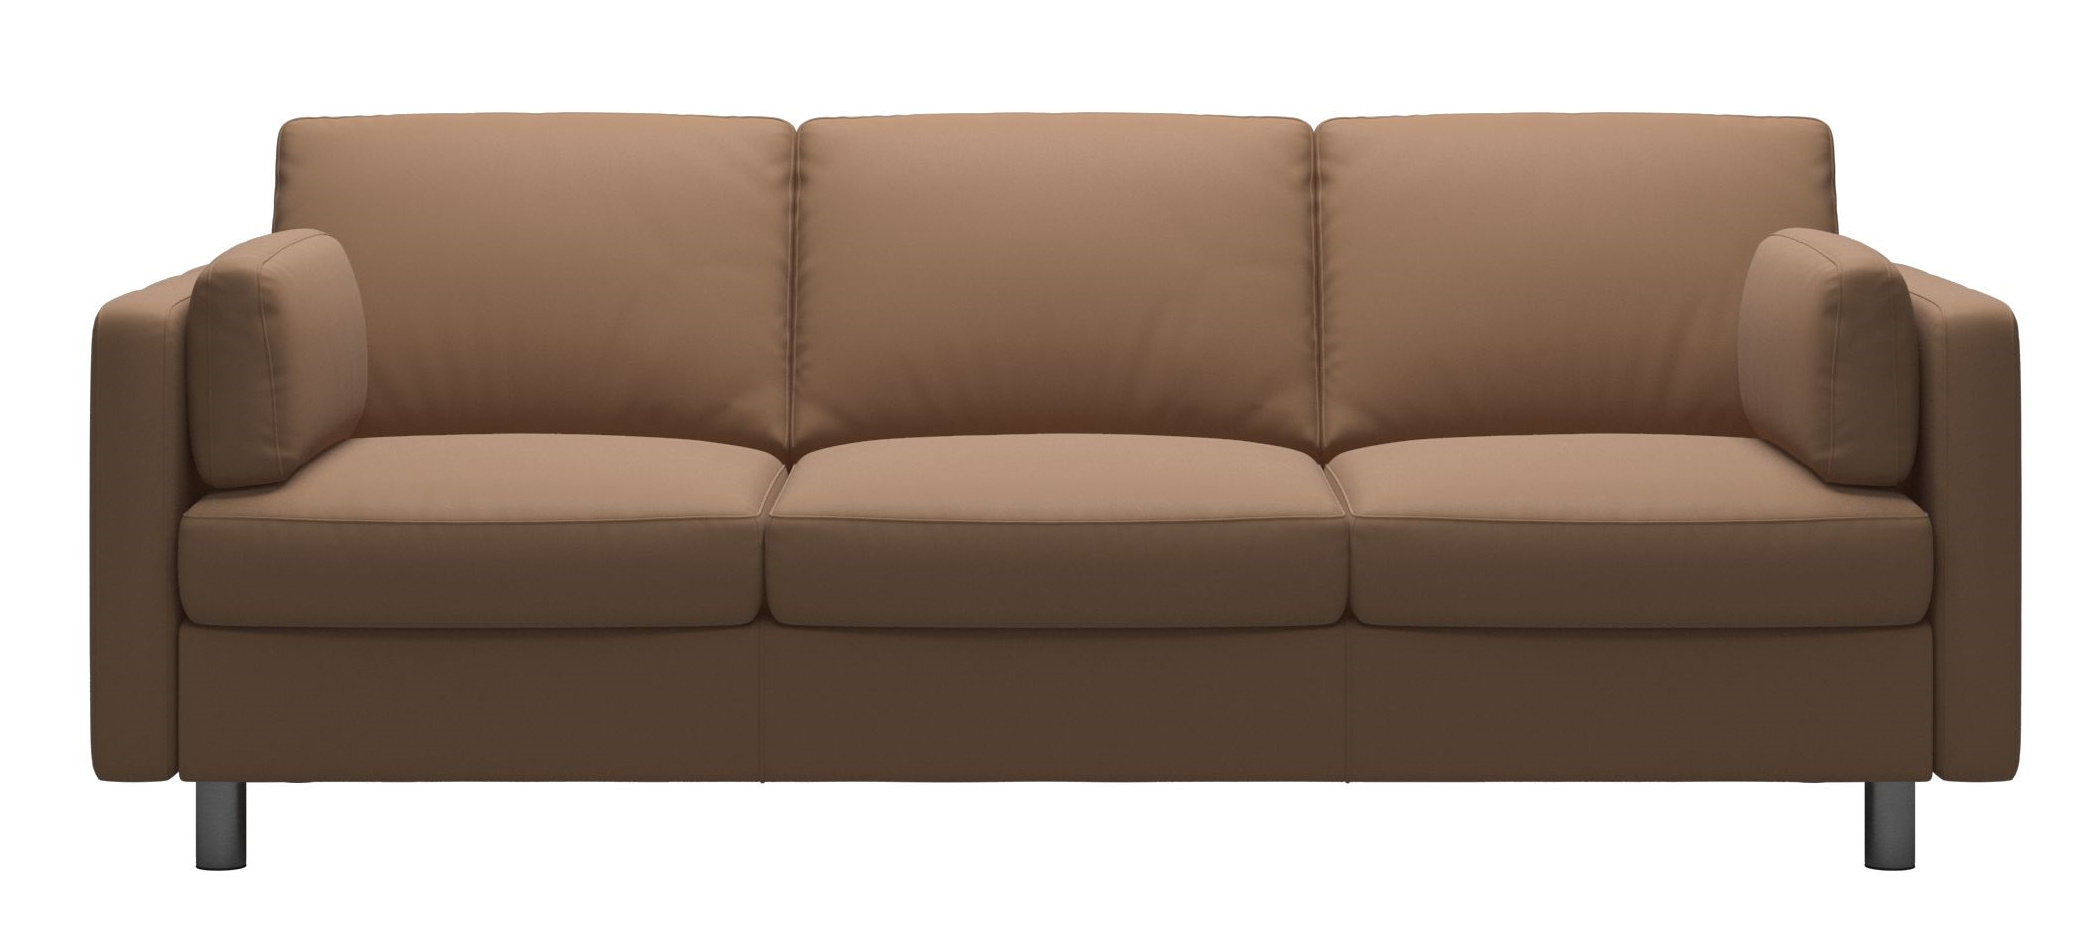 Canapea cu 3 locuri Stressless Emma E600 Classic picioare metalice 11cm piele Batik Latte sensodays imagine noua